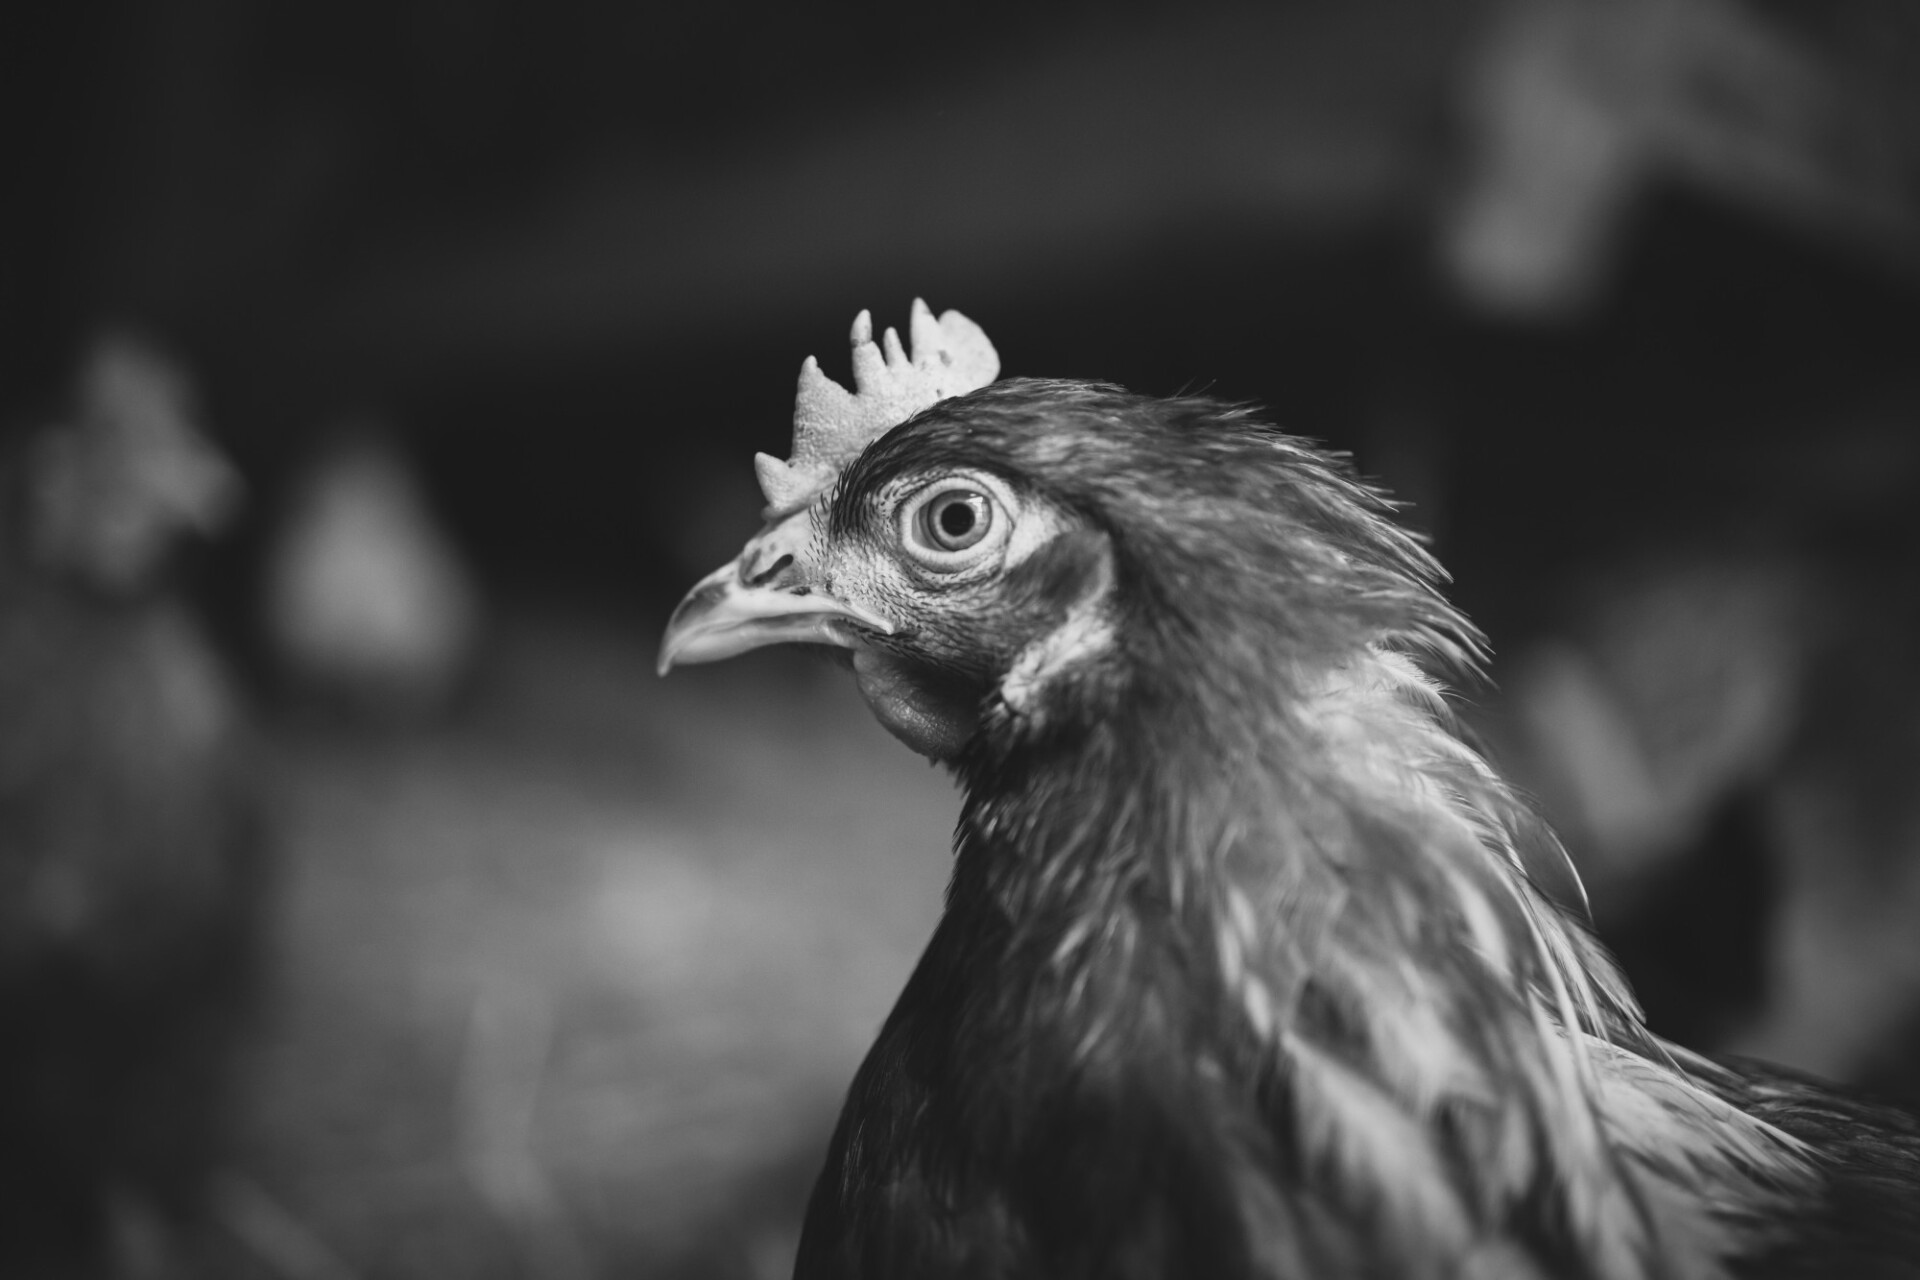 Chicken Hen Portrait in Black and White